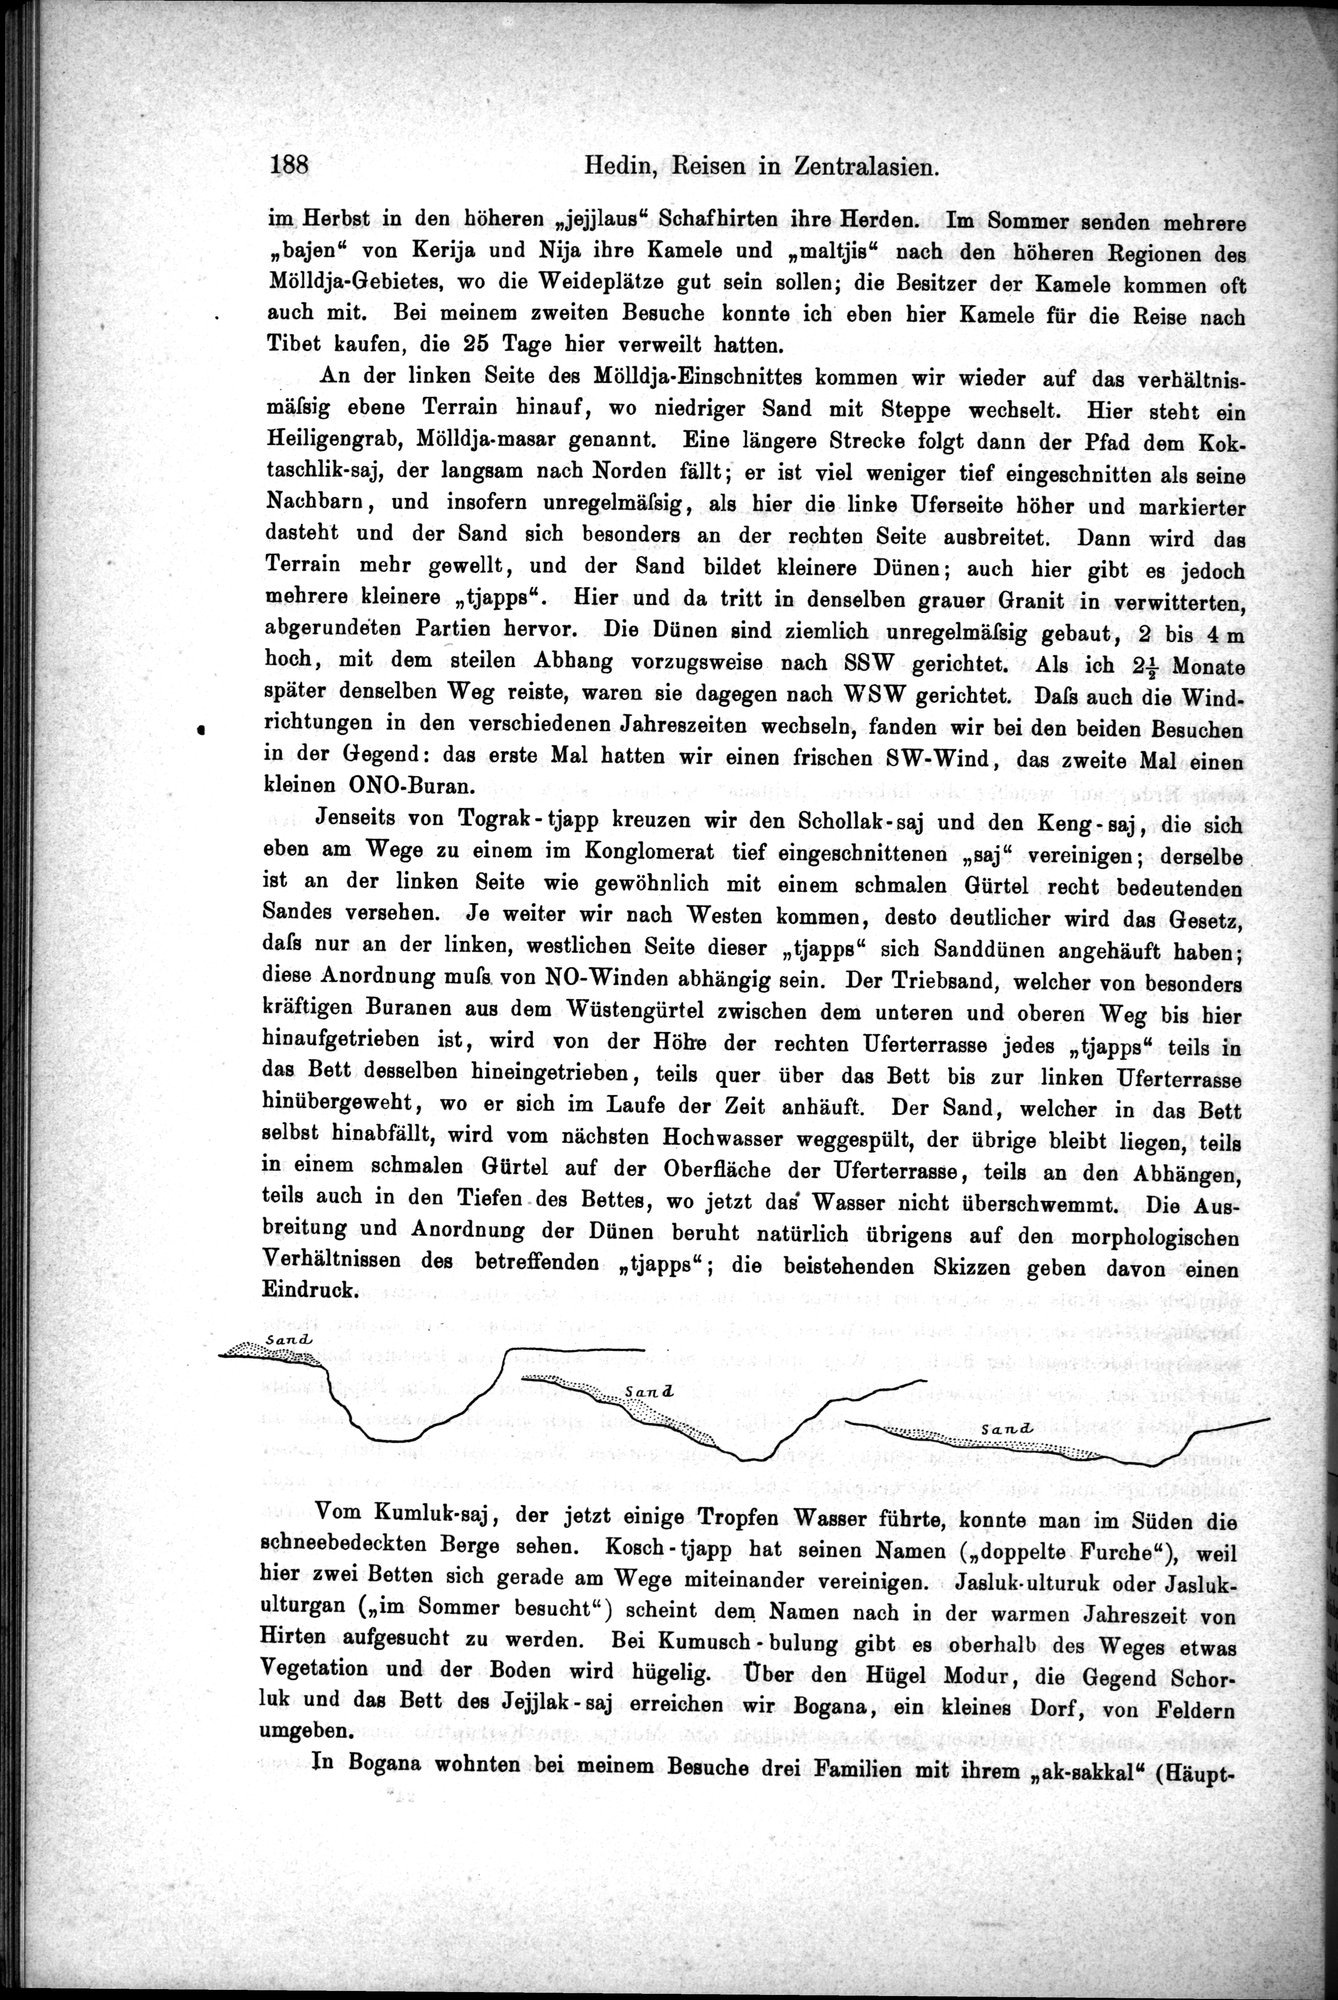 Die Geographische-Wissenschaftlichen Ergebnisse meiner Reisen in Zentralasien, 1894-1897 : vol.1 / Page 200 (Grayscale High Resolution Image)